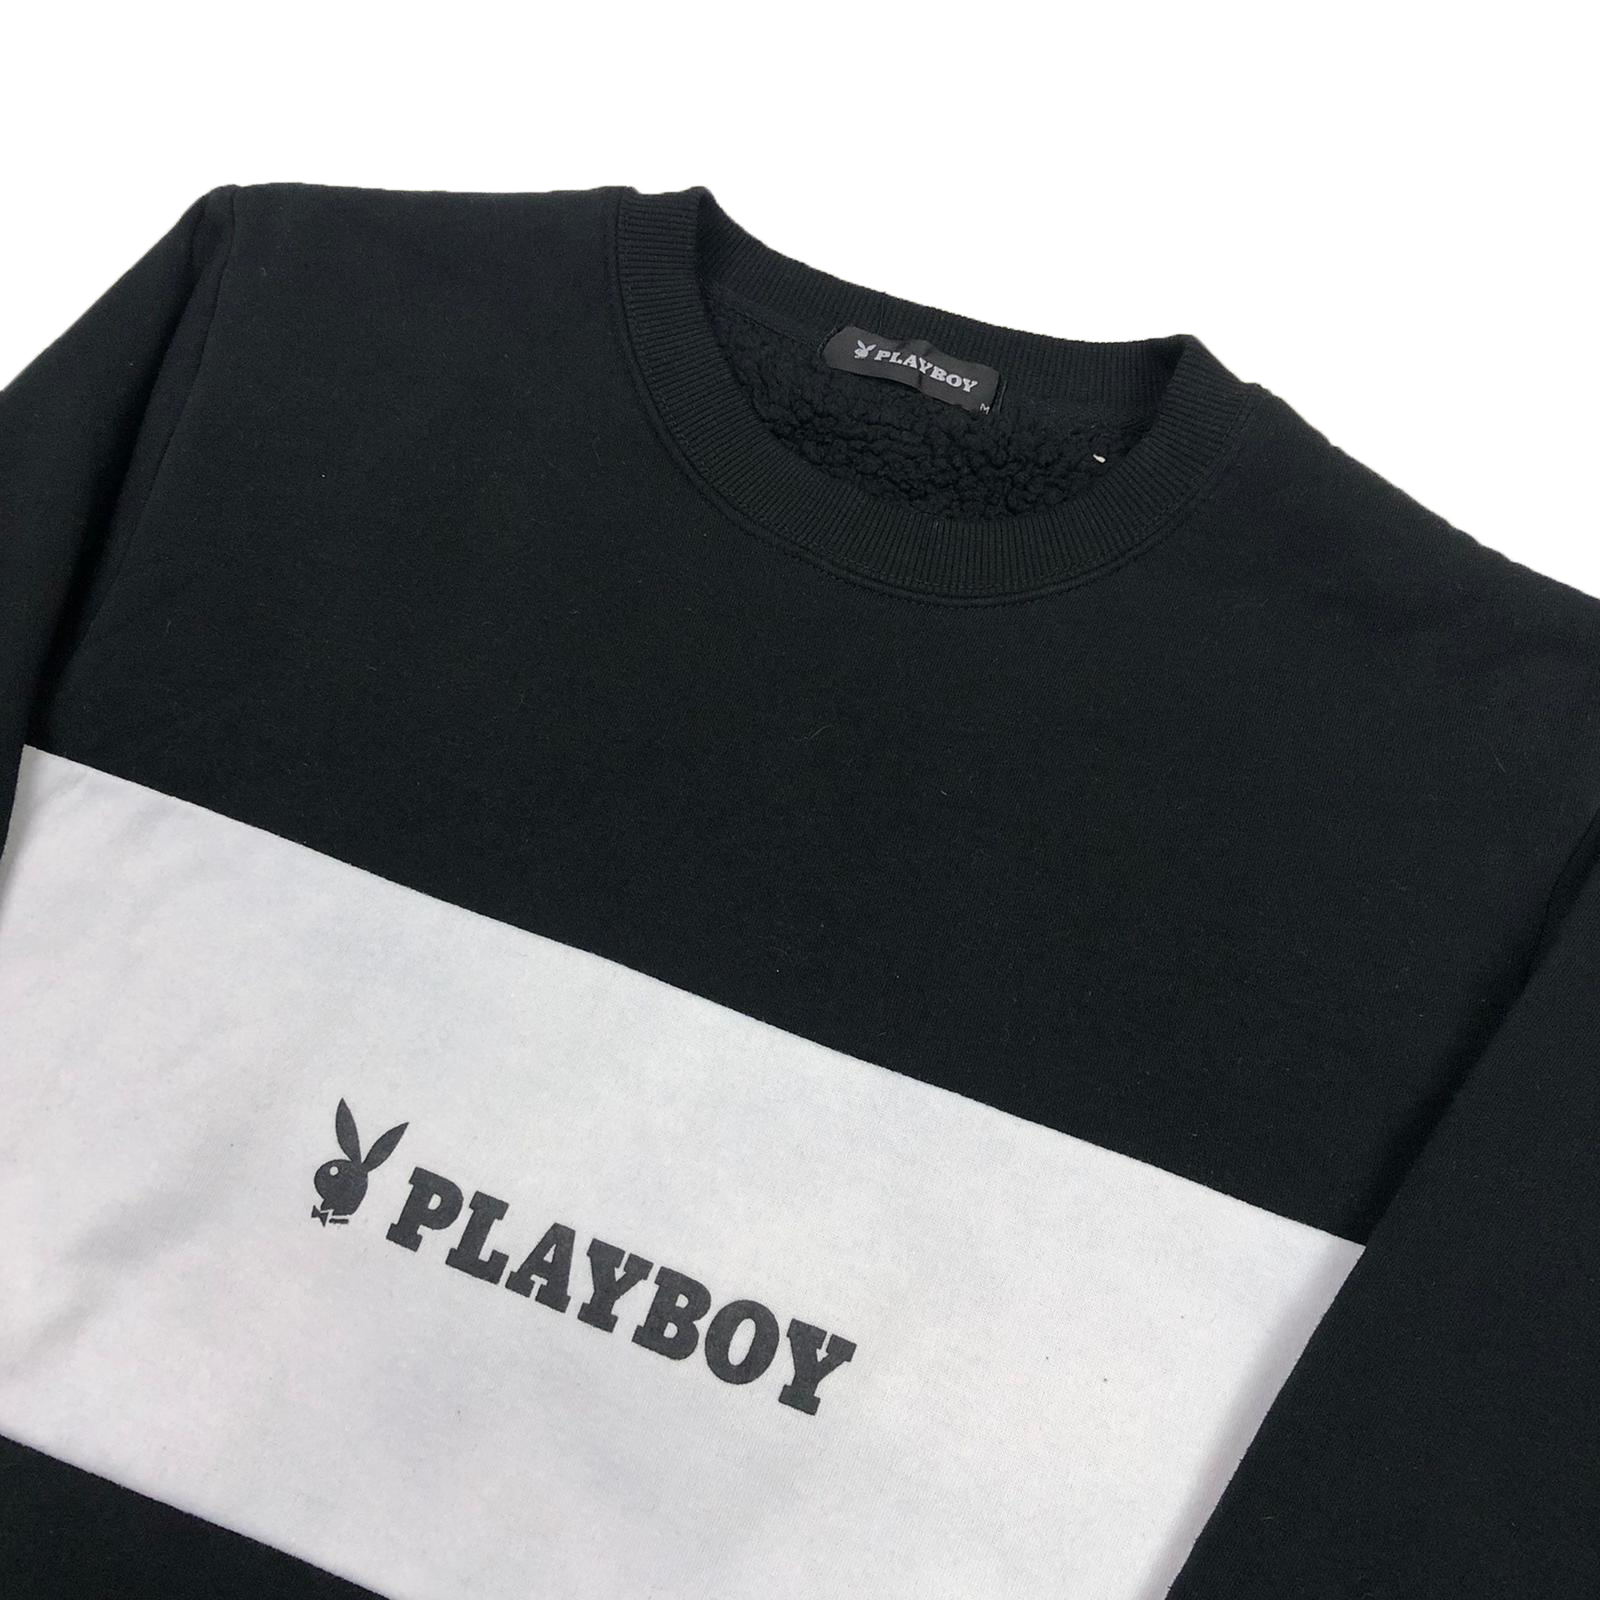 Women's Playboy sweatshirt